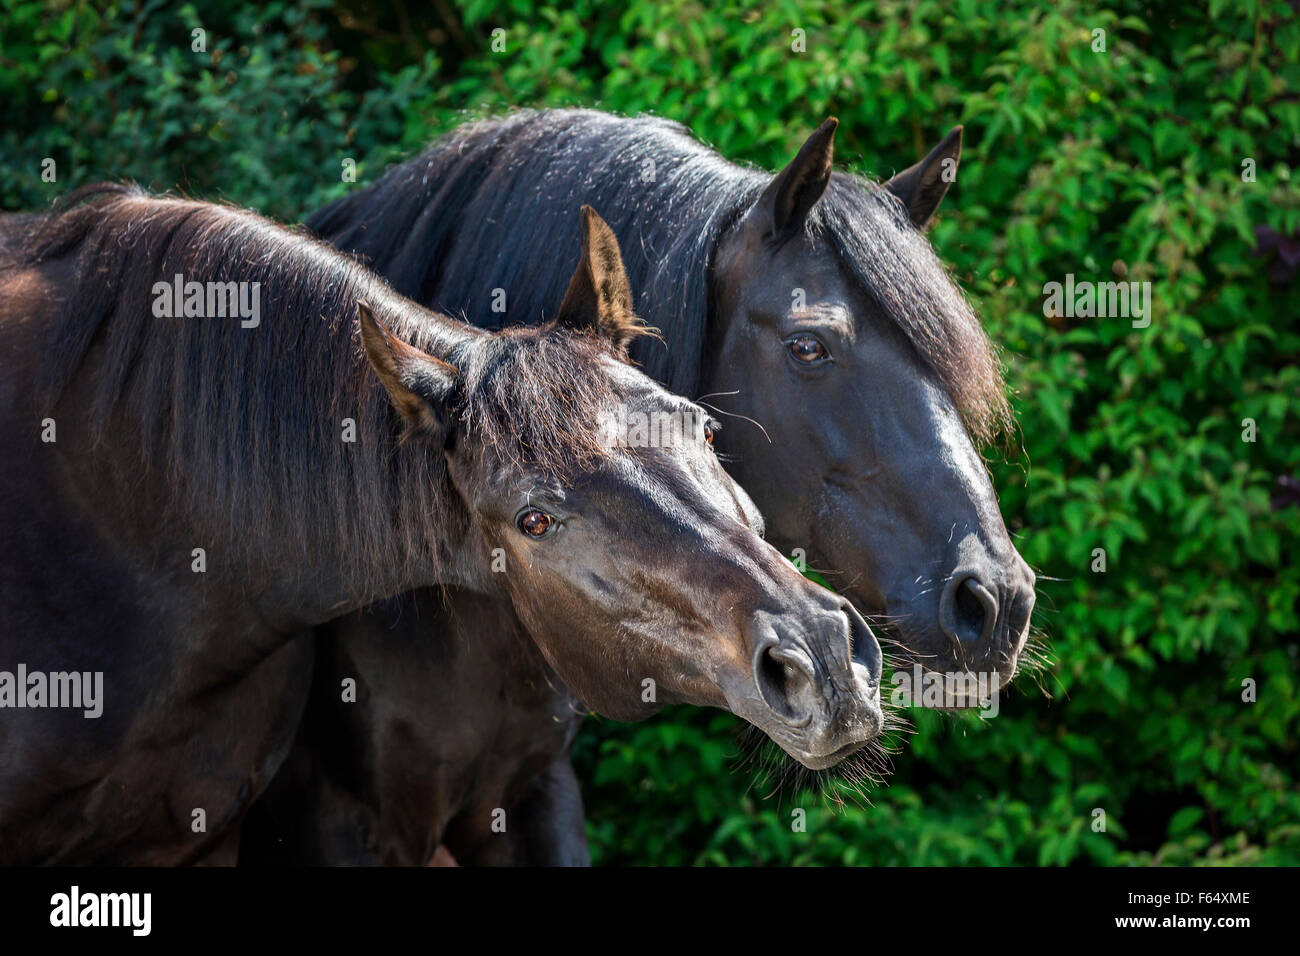 Barb Horse et American Quarter Horse. Deux chevaux sur un pâturage. Allemagne Banque D'Images